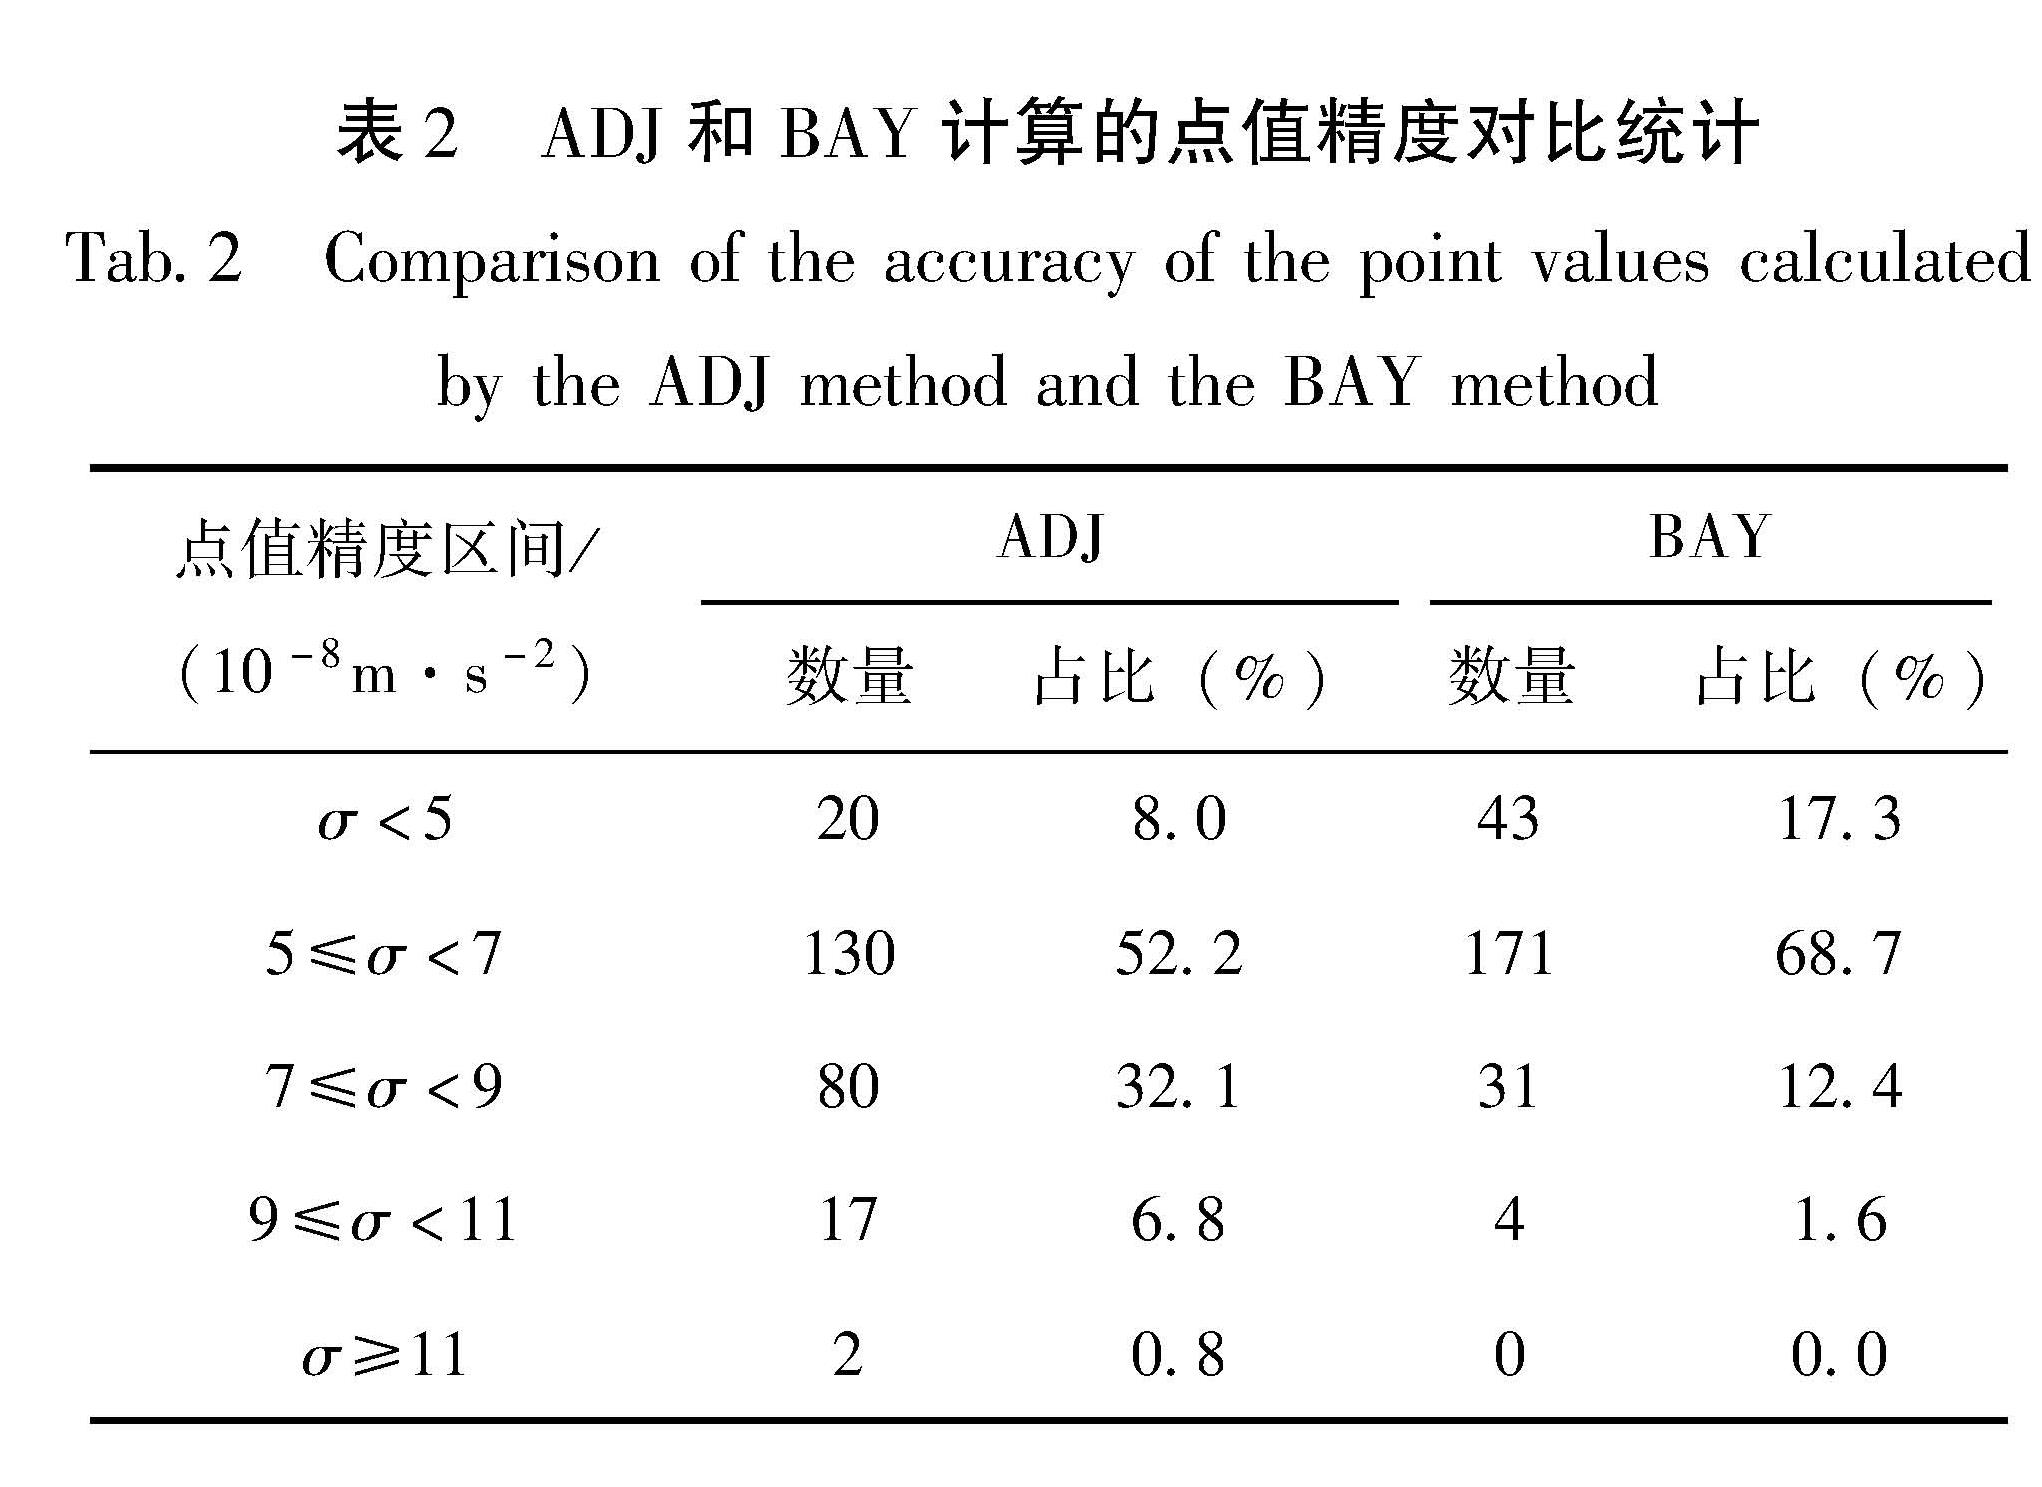 表2 ADJ和BAY计算的点值精度对比统计<br/>Tab.2 Comparison of the accuracy of the point values calculated by the ADJ method and the BAY method